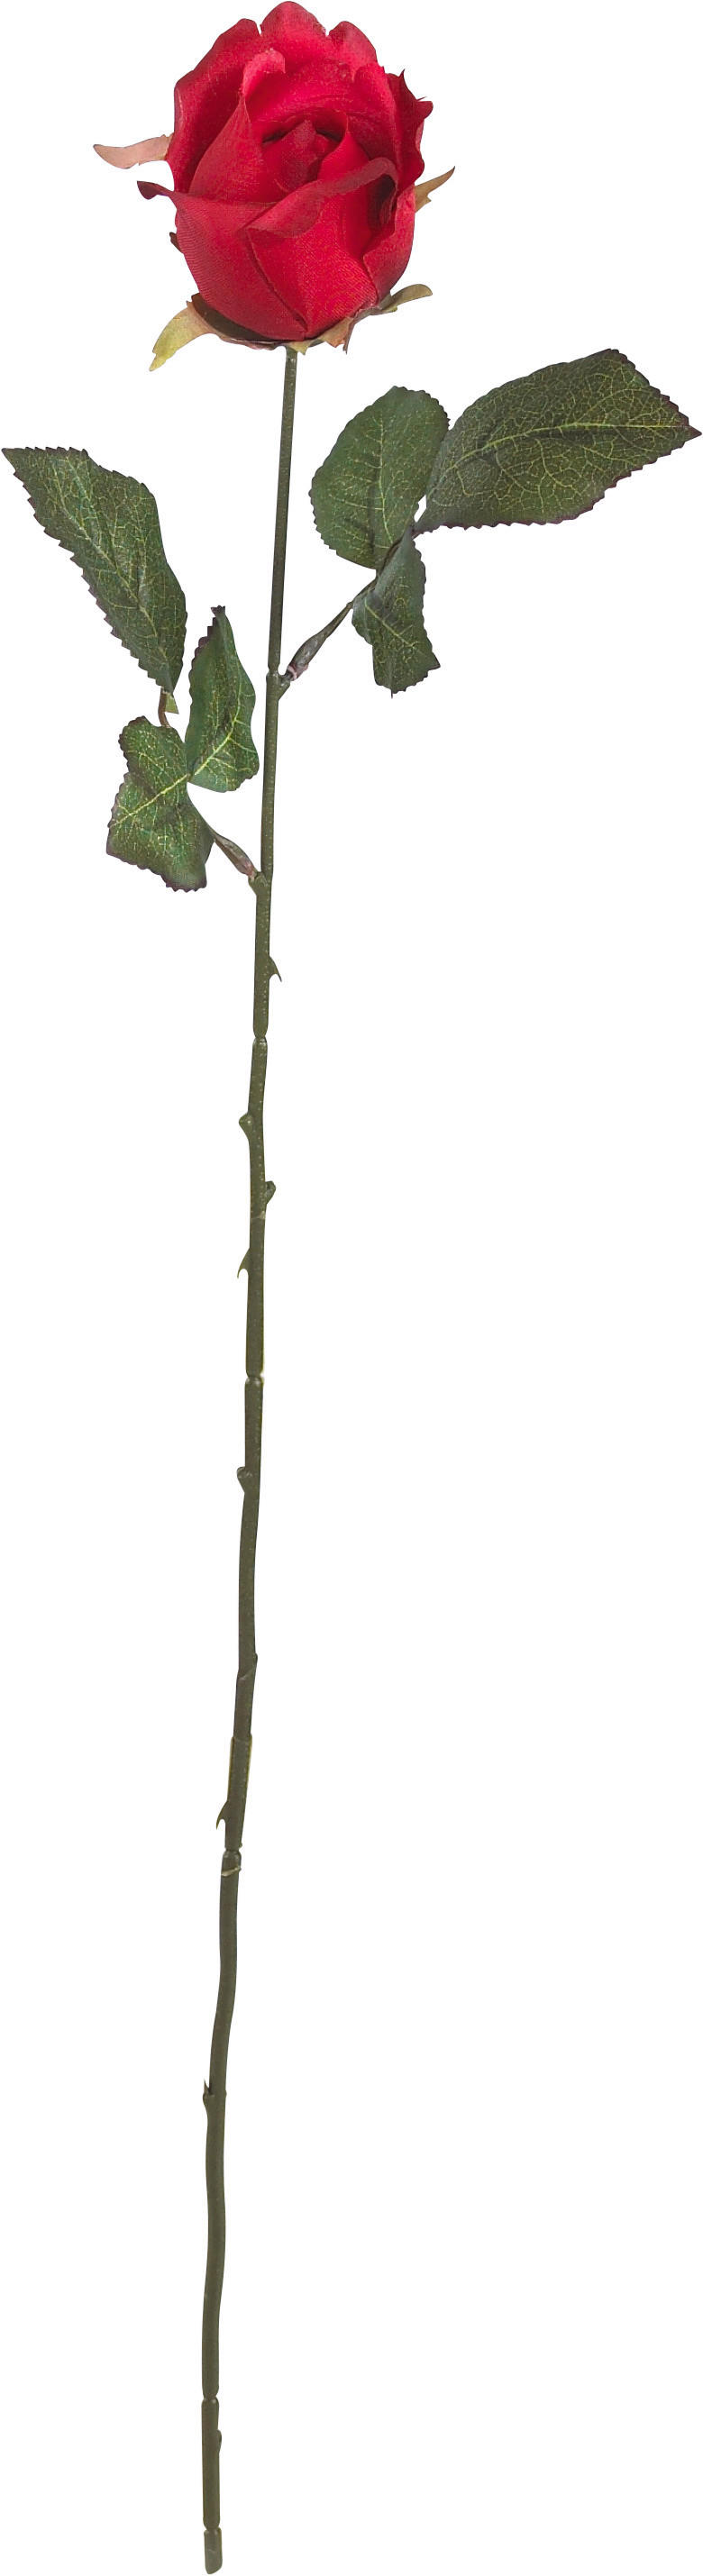 UMELÝ KVET ruža 62 cm - lila/oranžová, Basics, textil/plast (62cm)